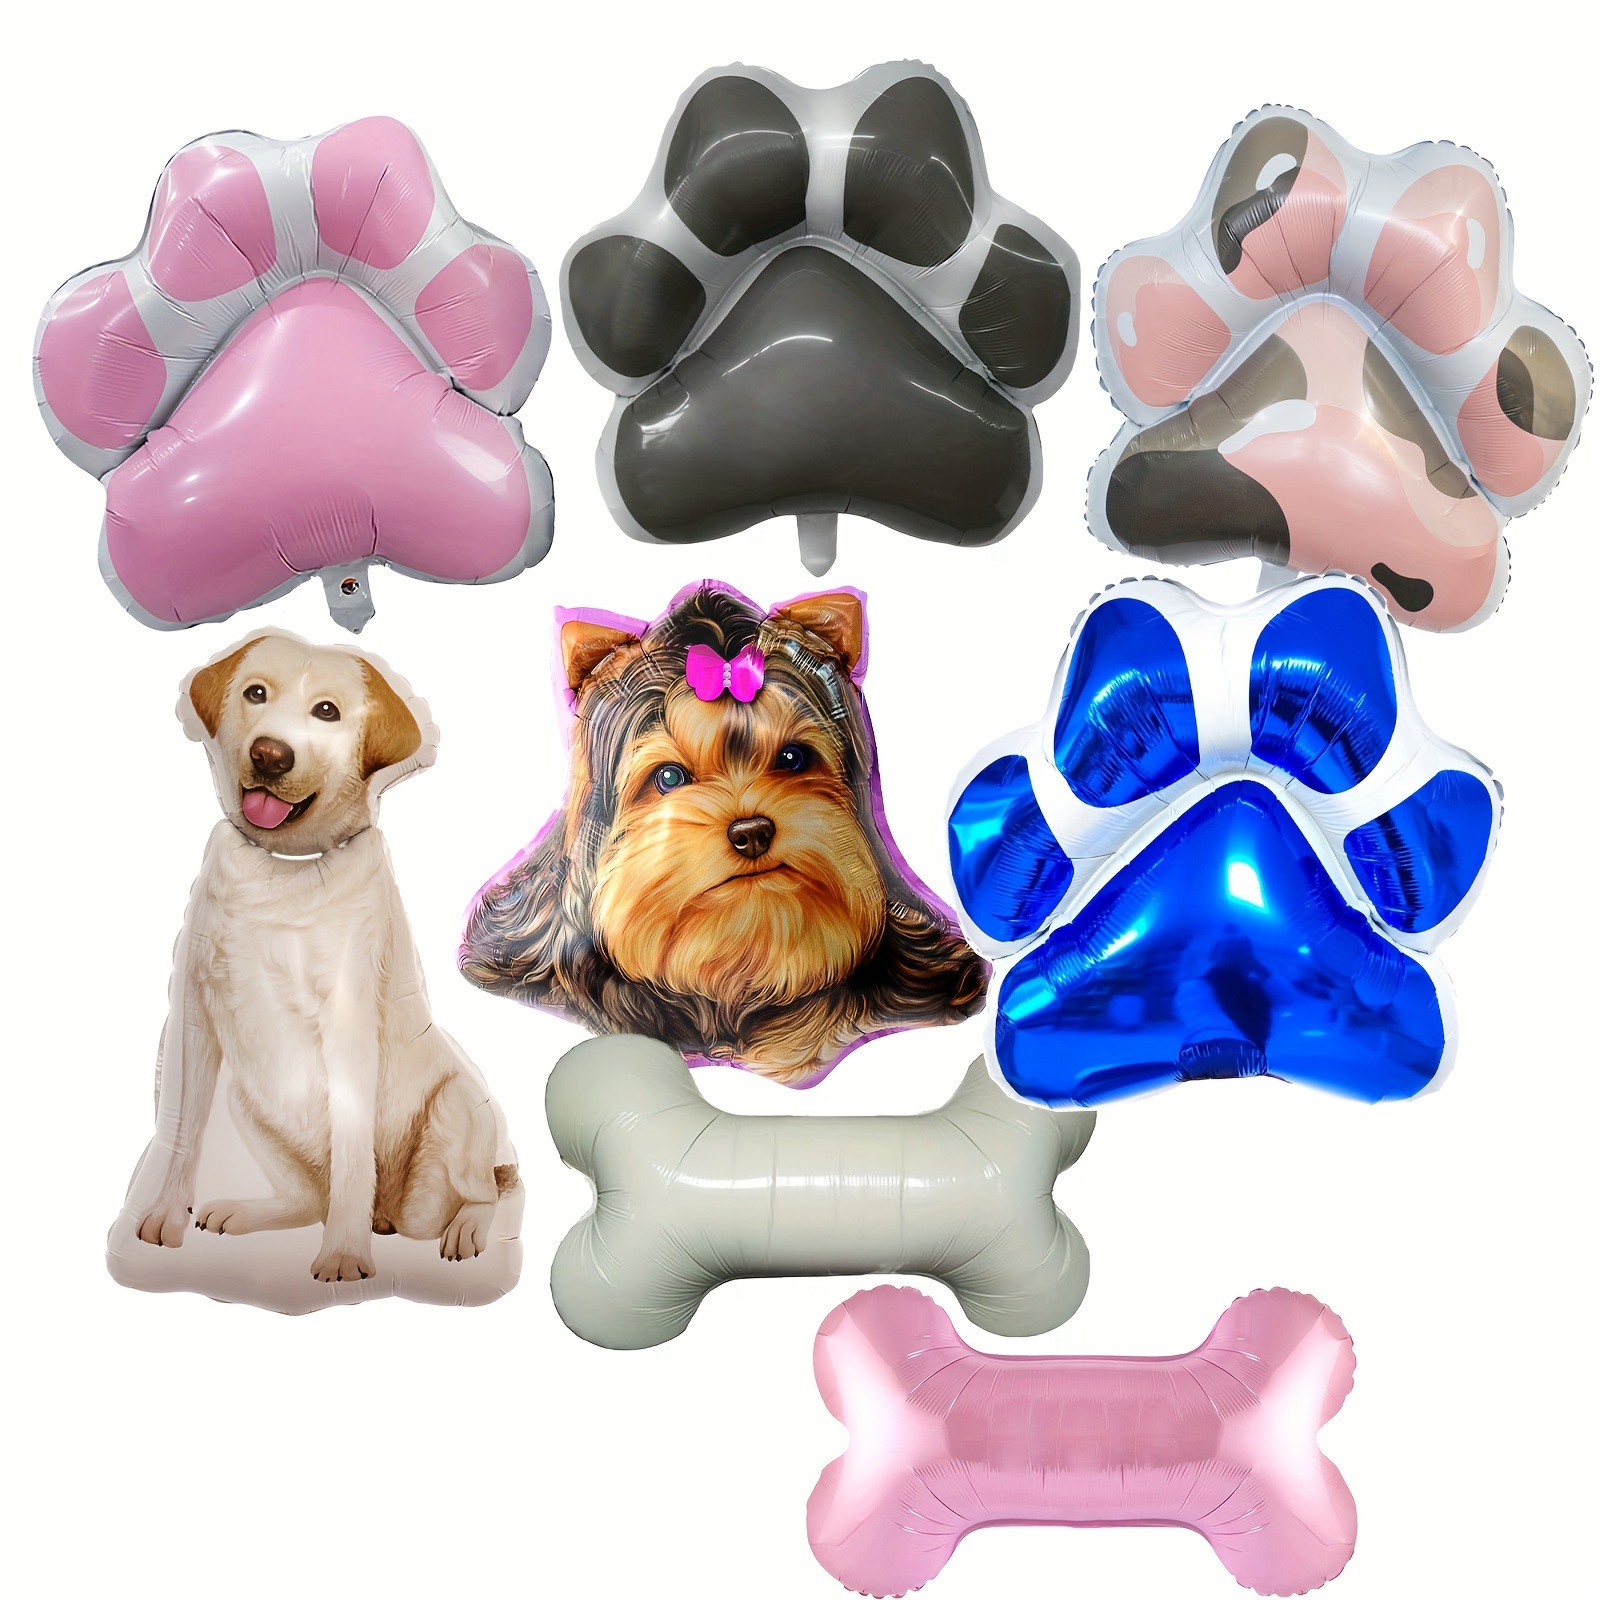 Globos huella de perro de foil en la categoria globos de animales para  decoración